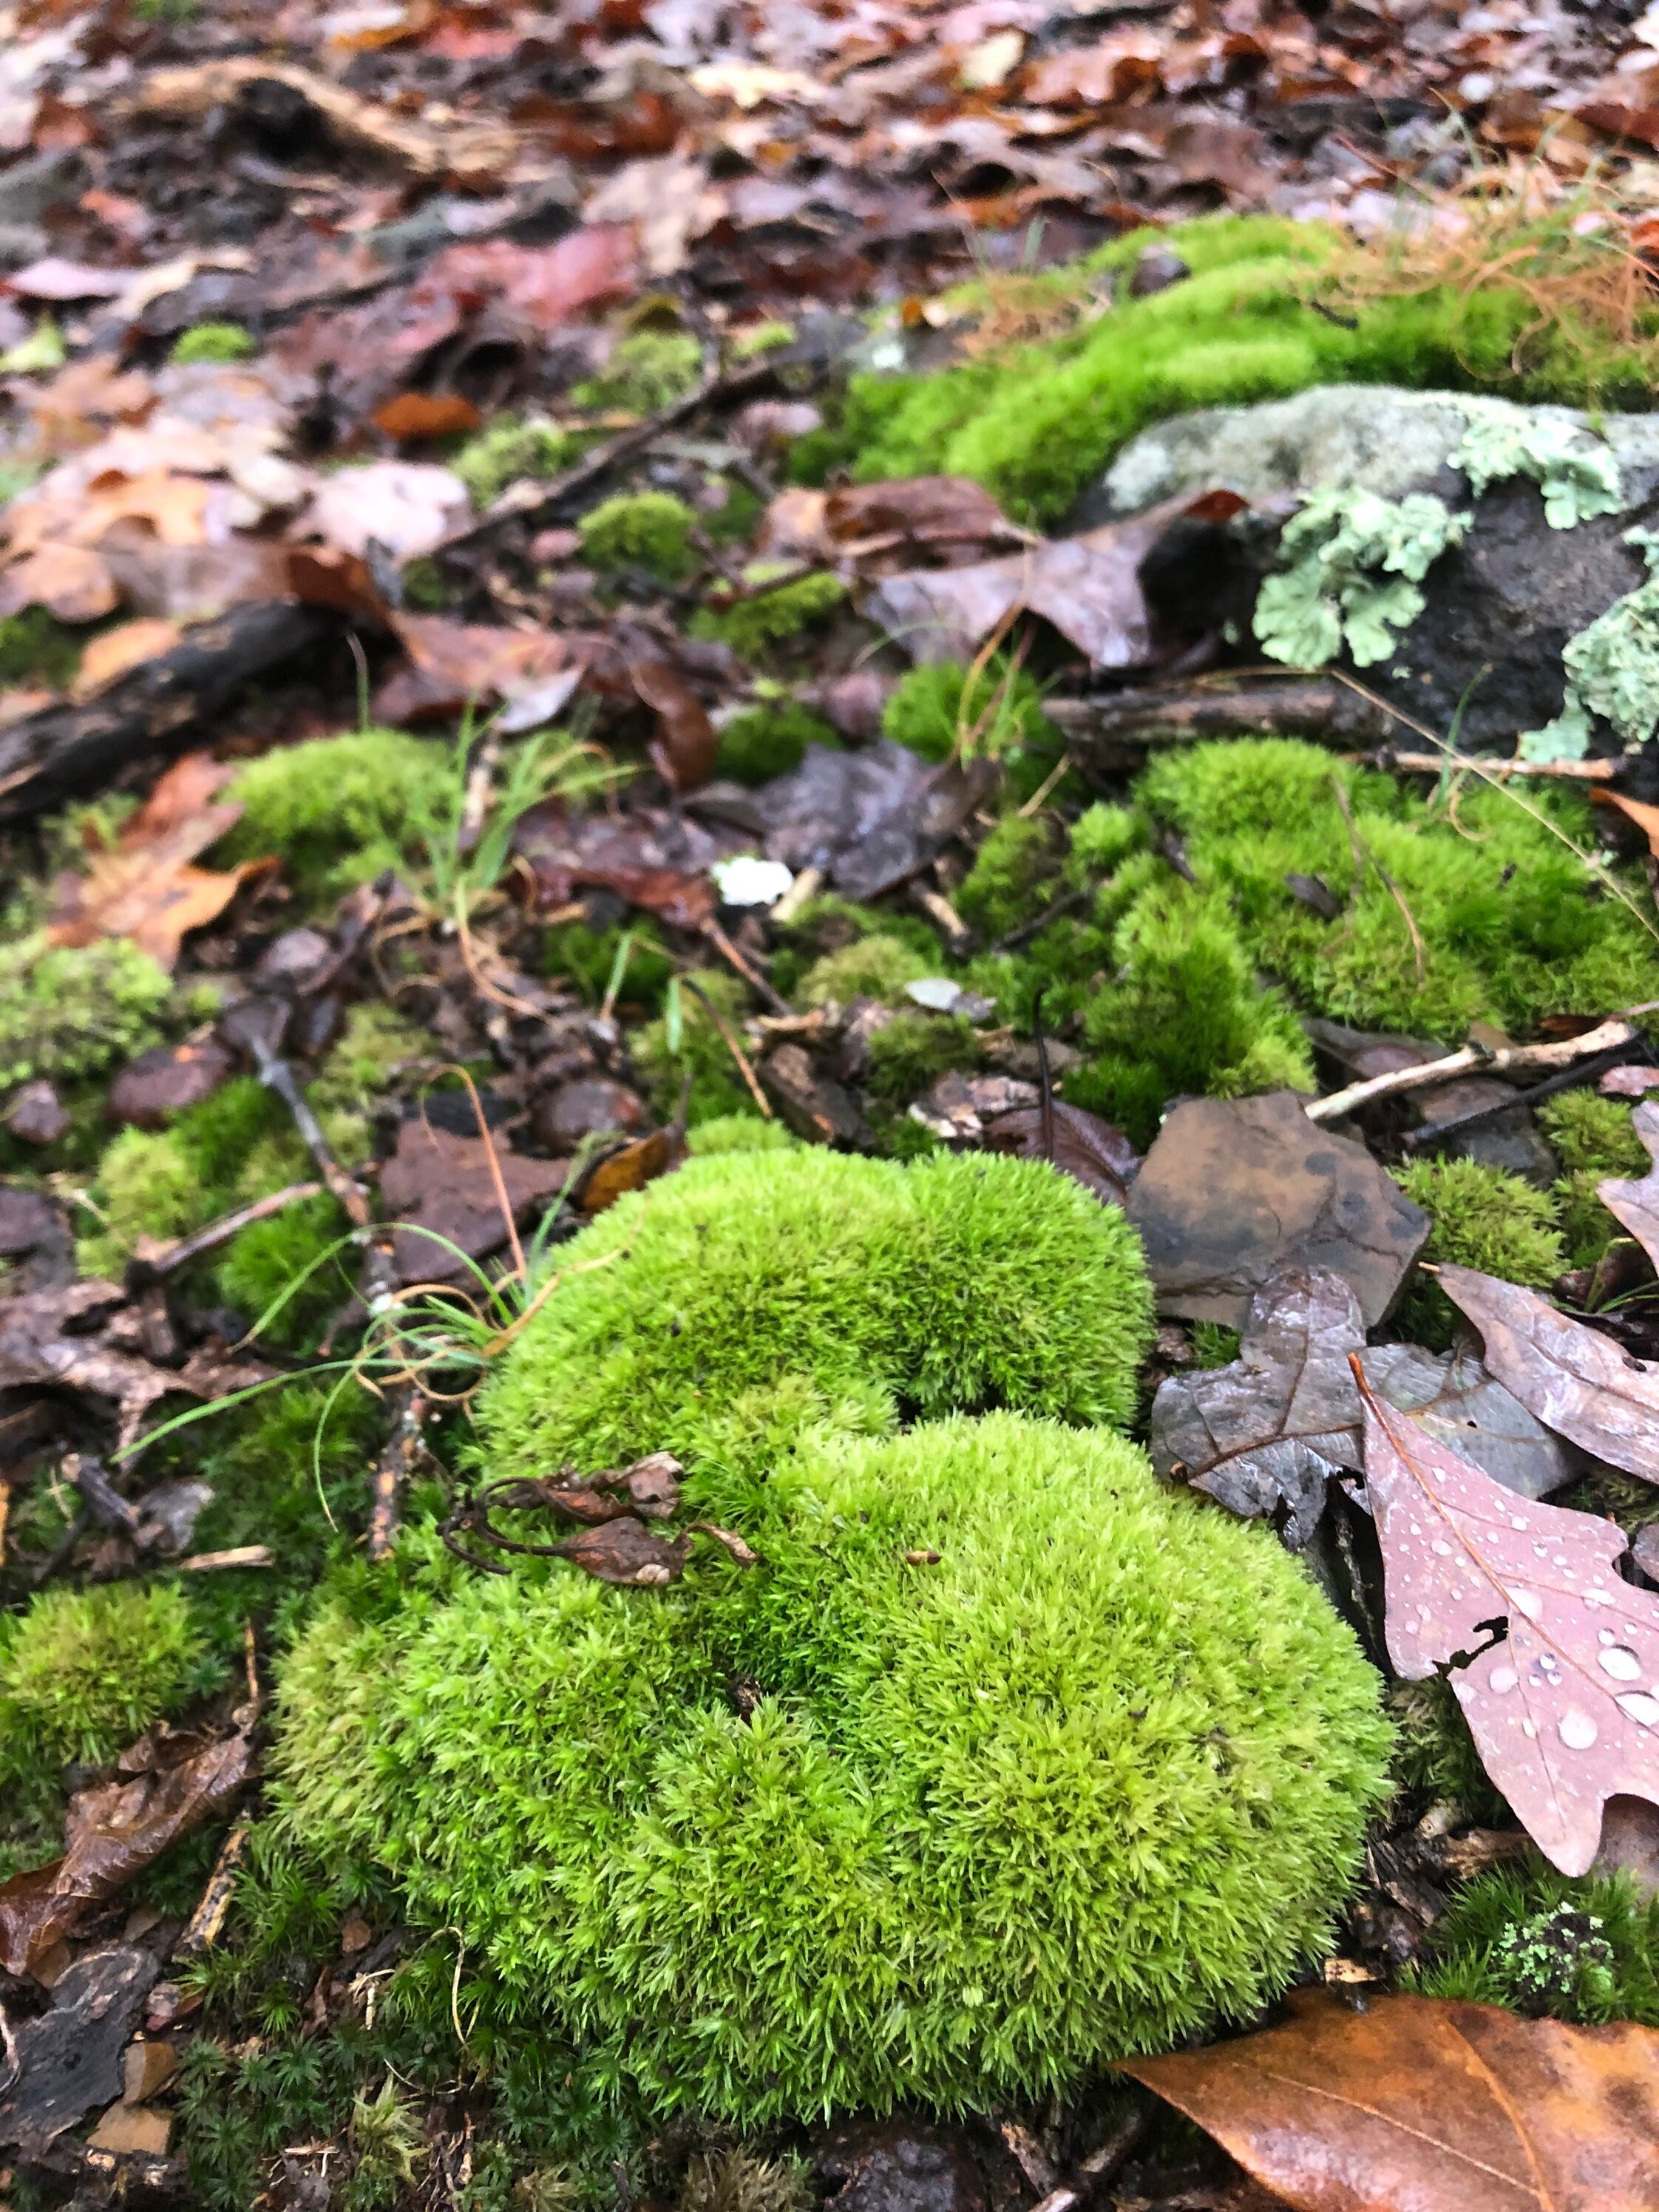 Minnesota Seasons - pincushion moss